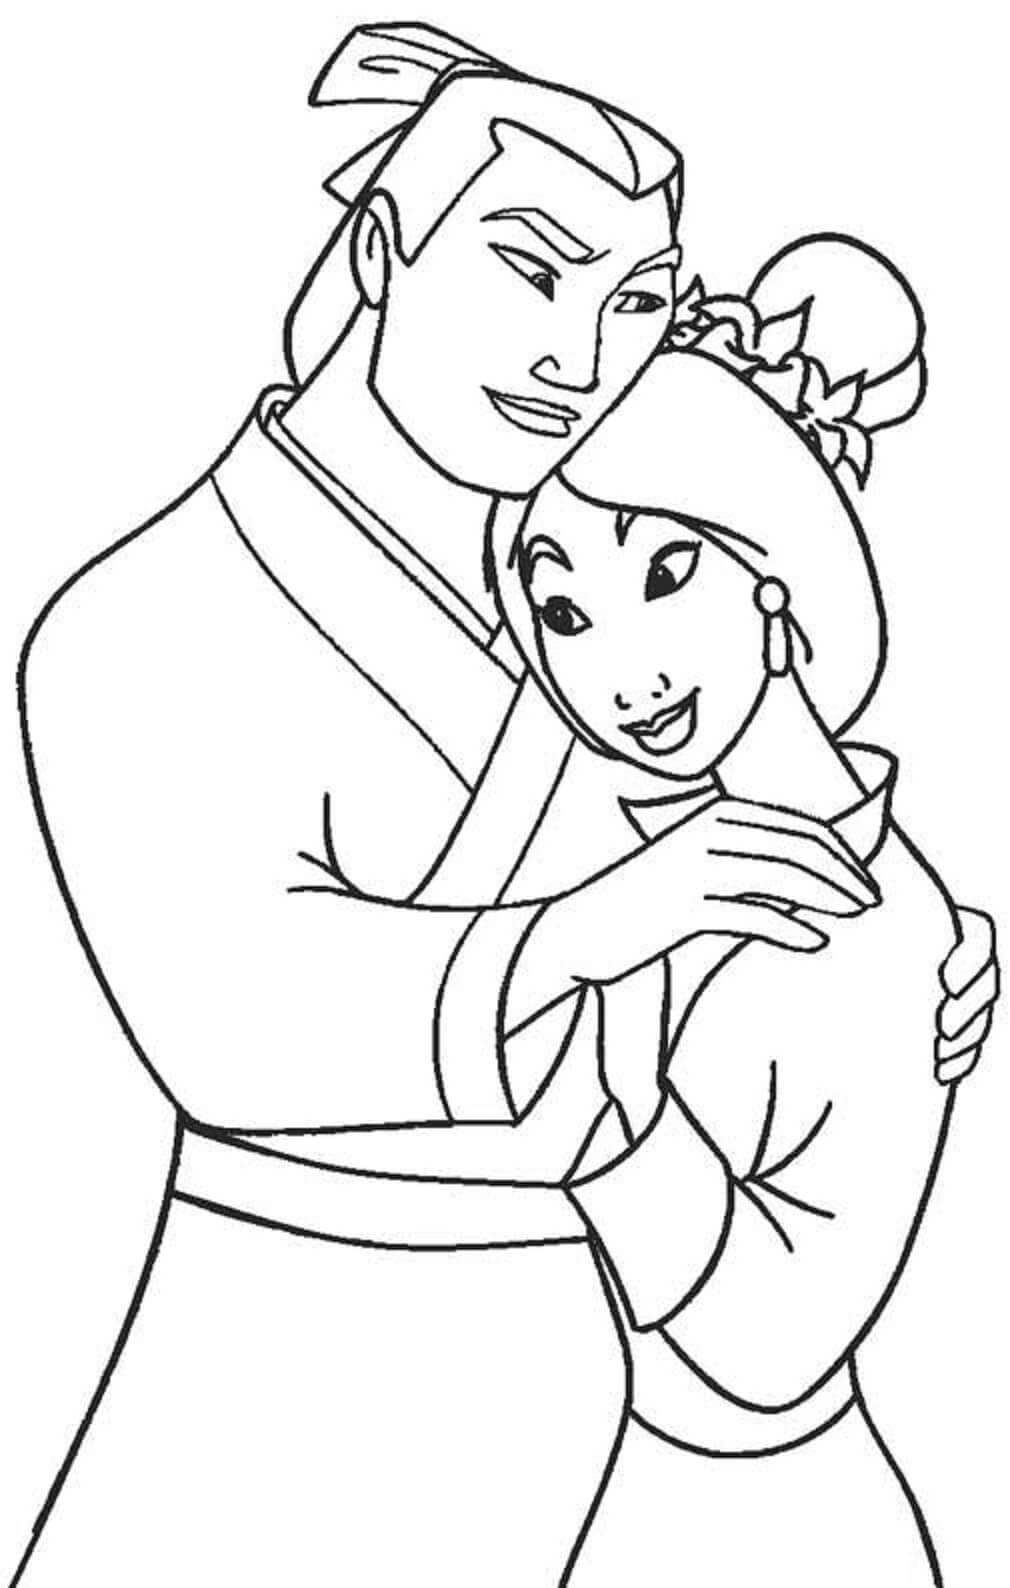 Mulan umarmt Li Shang